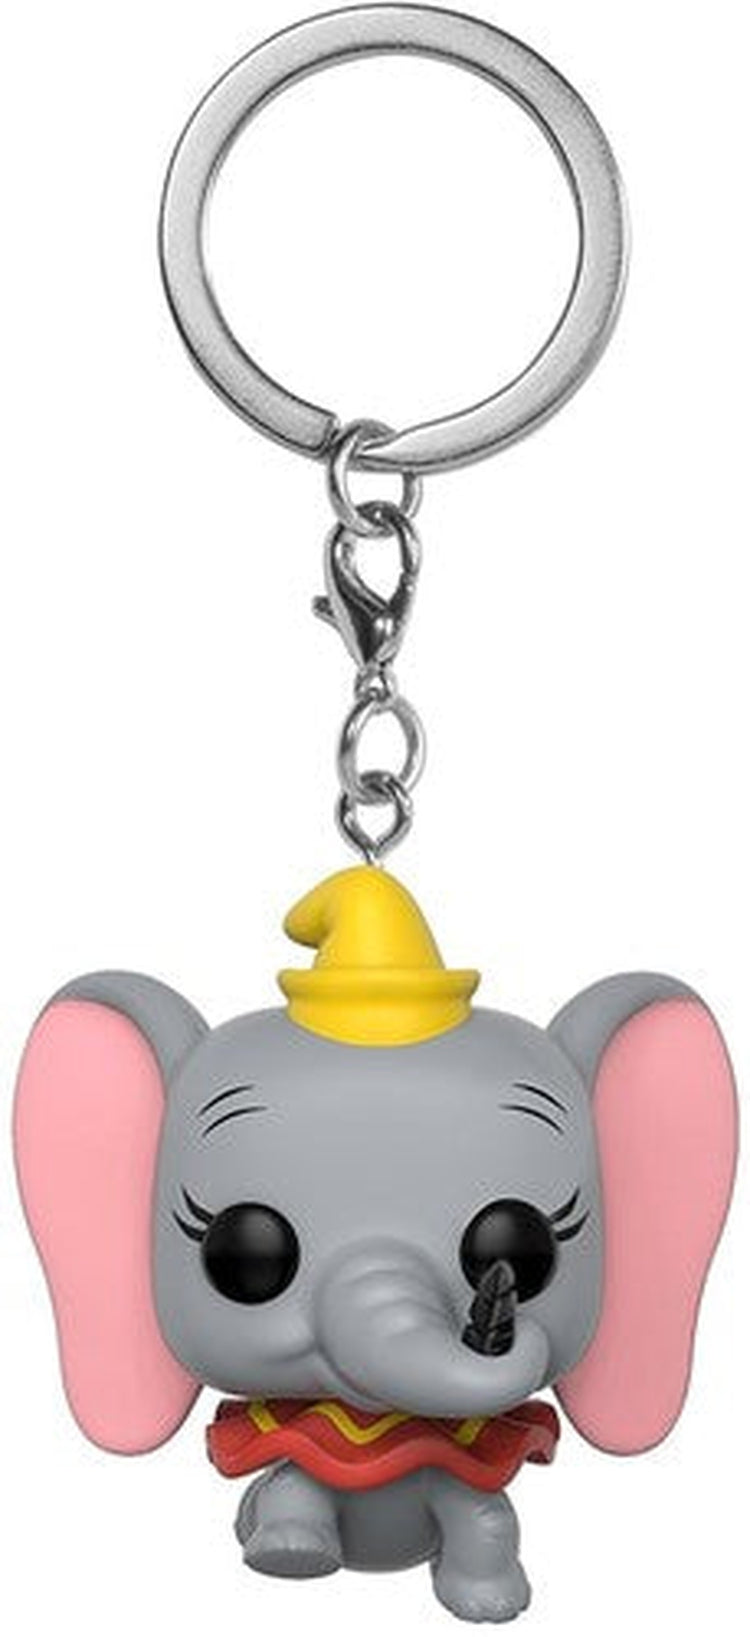 FUNKO POP! KEYCHAIN: Dumbo - Dumbo